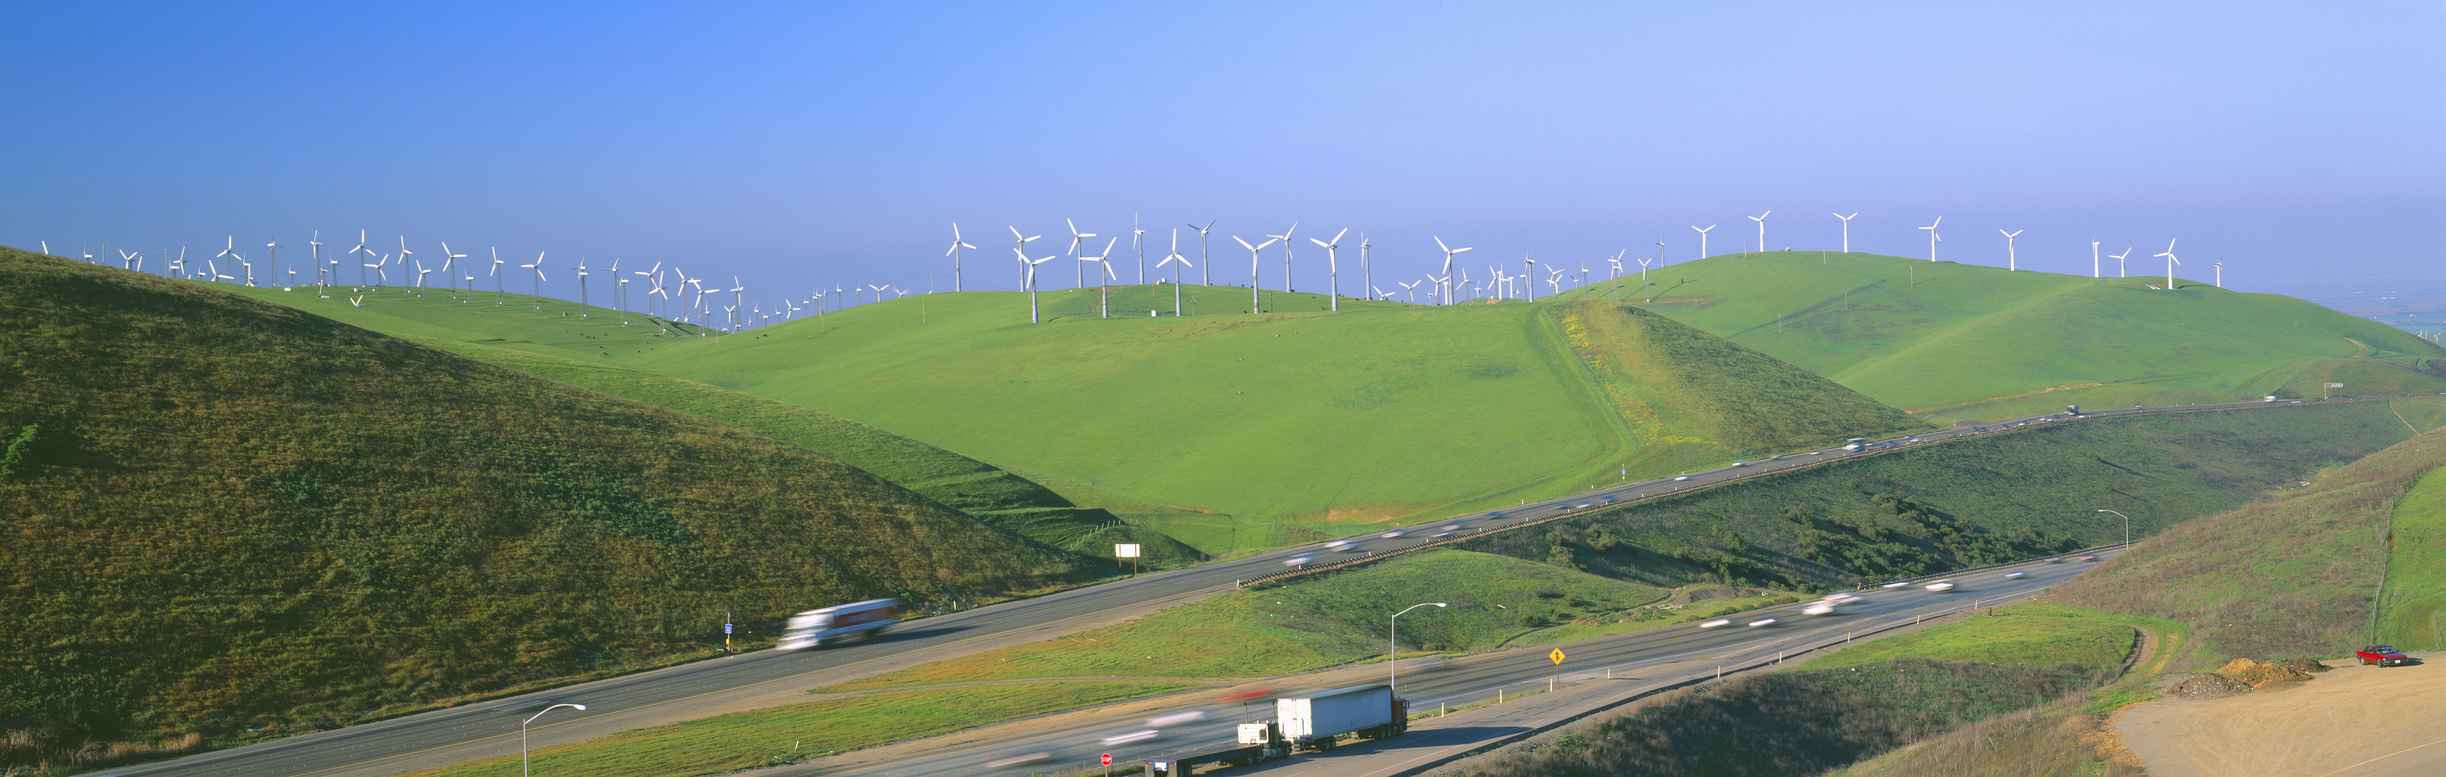 Windmühlen so weit das Auge reicht: Die Entwicklung der Erneuerbaren, wie hier in Californieren last sich nicht mehr aufhalten. 